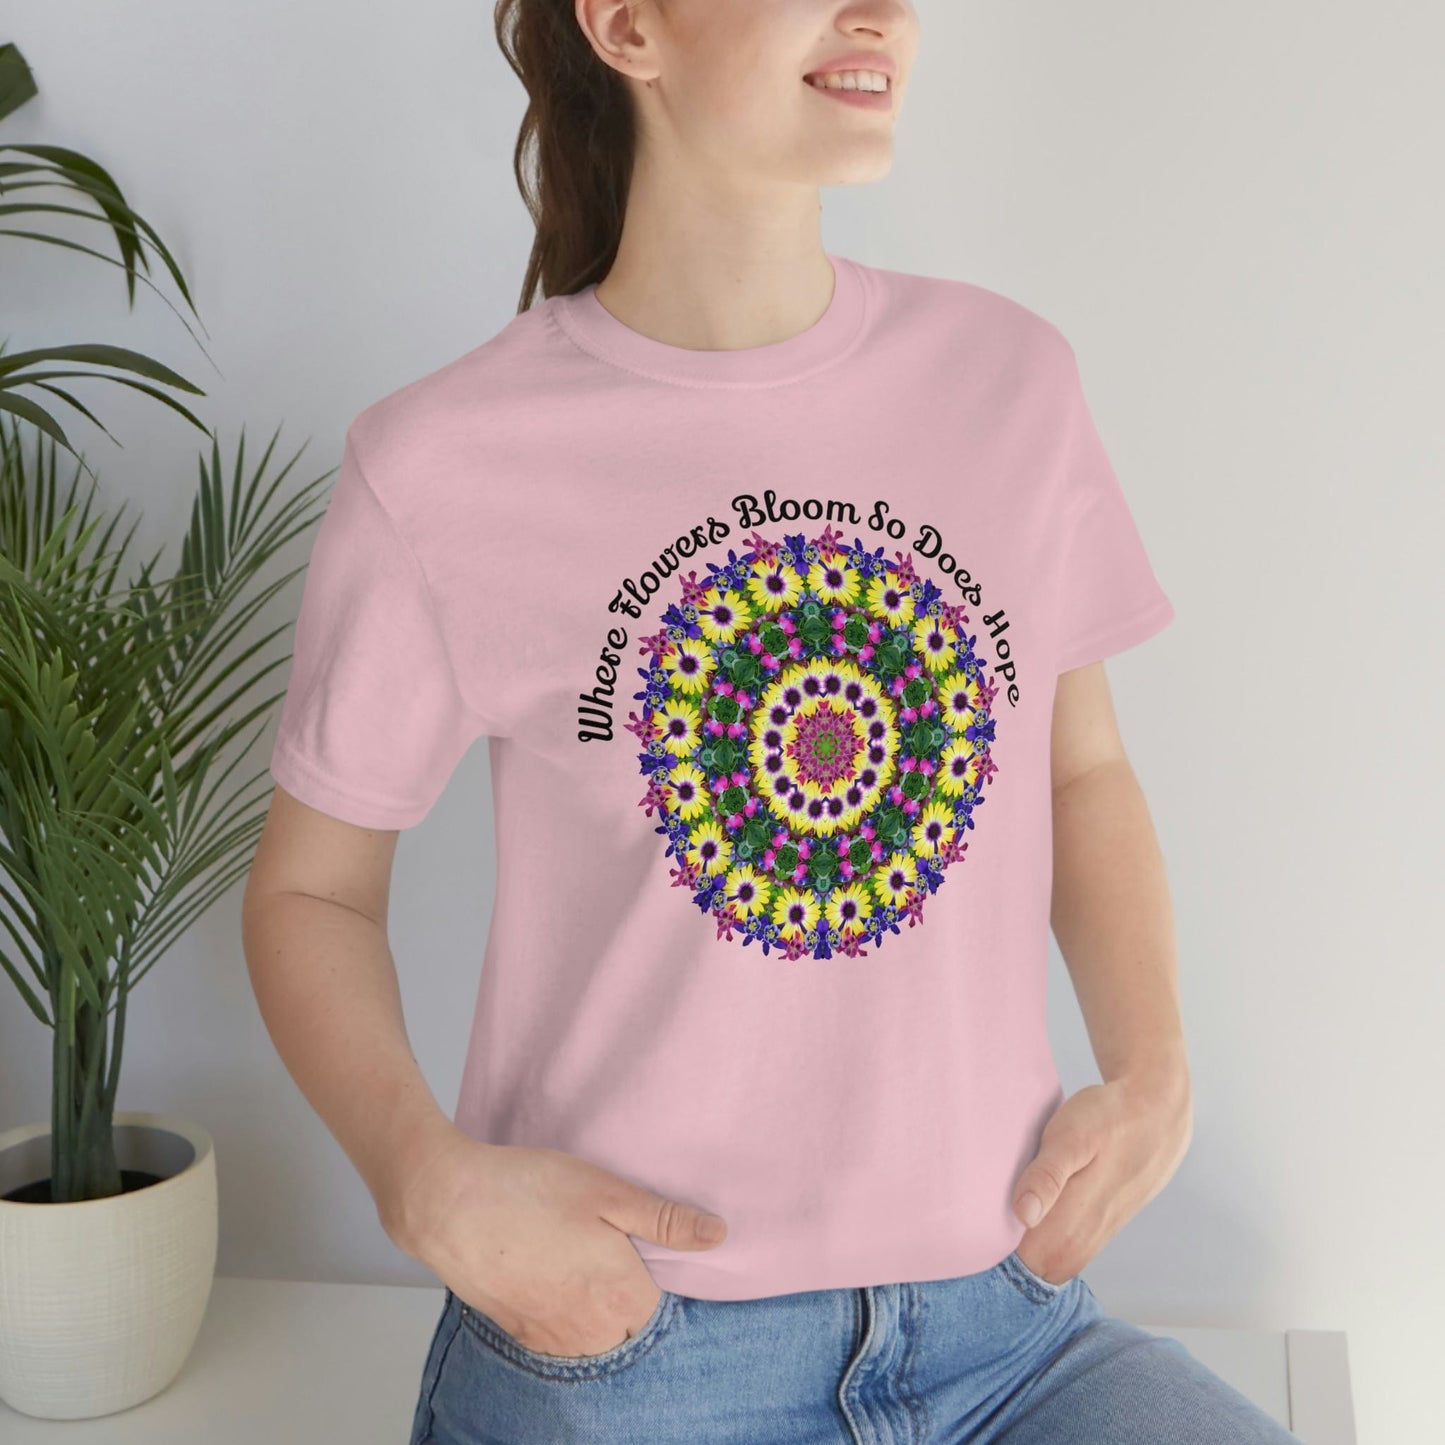 Daisy Top Best Selling Shirts, Birth Flower Shirt, Zen Poet Shirt, Kawaii Cottage Core Shirt, Fun Shirt Designs, Cute Shirts Teens Womens 2